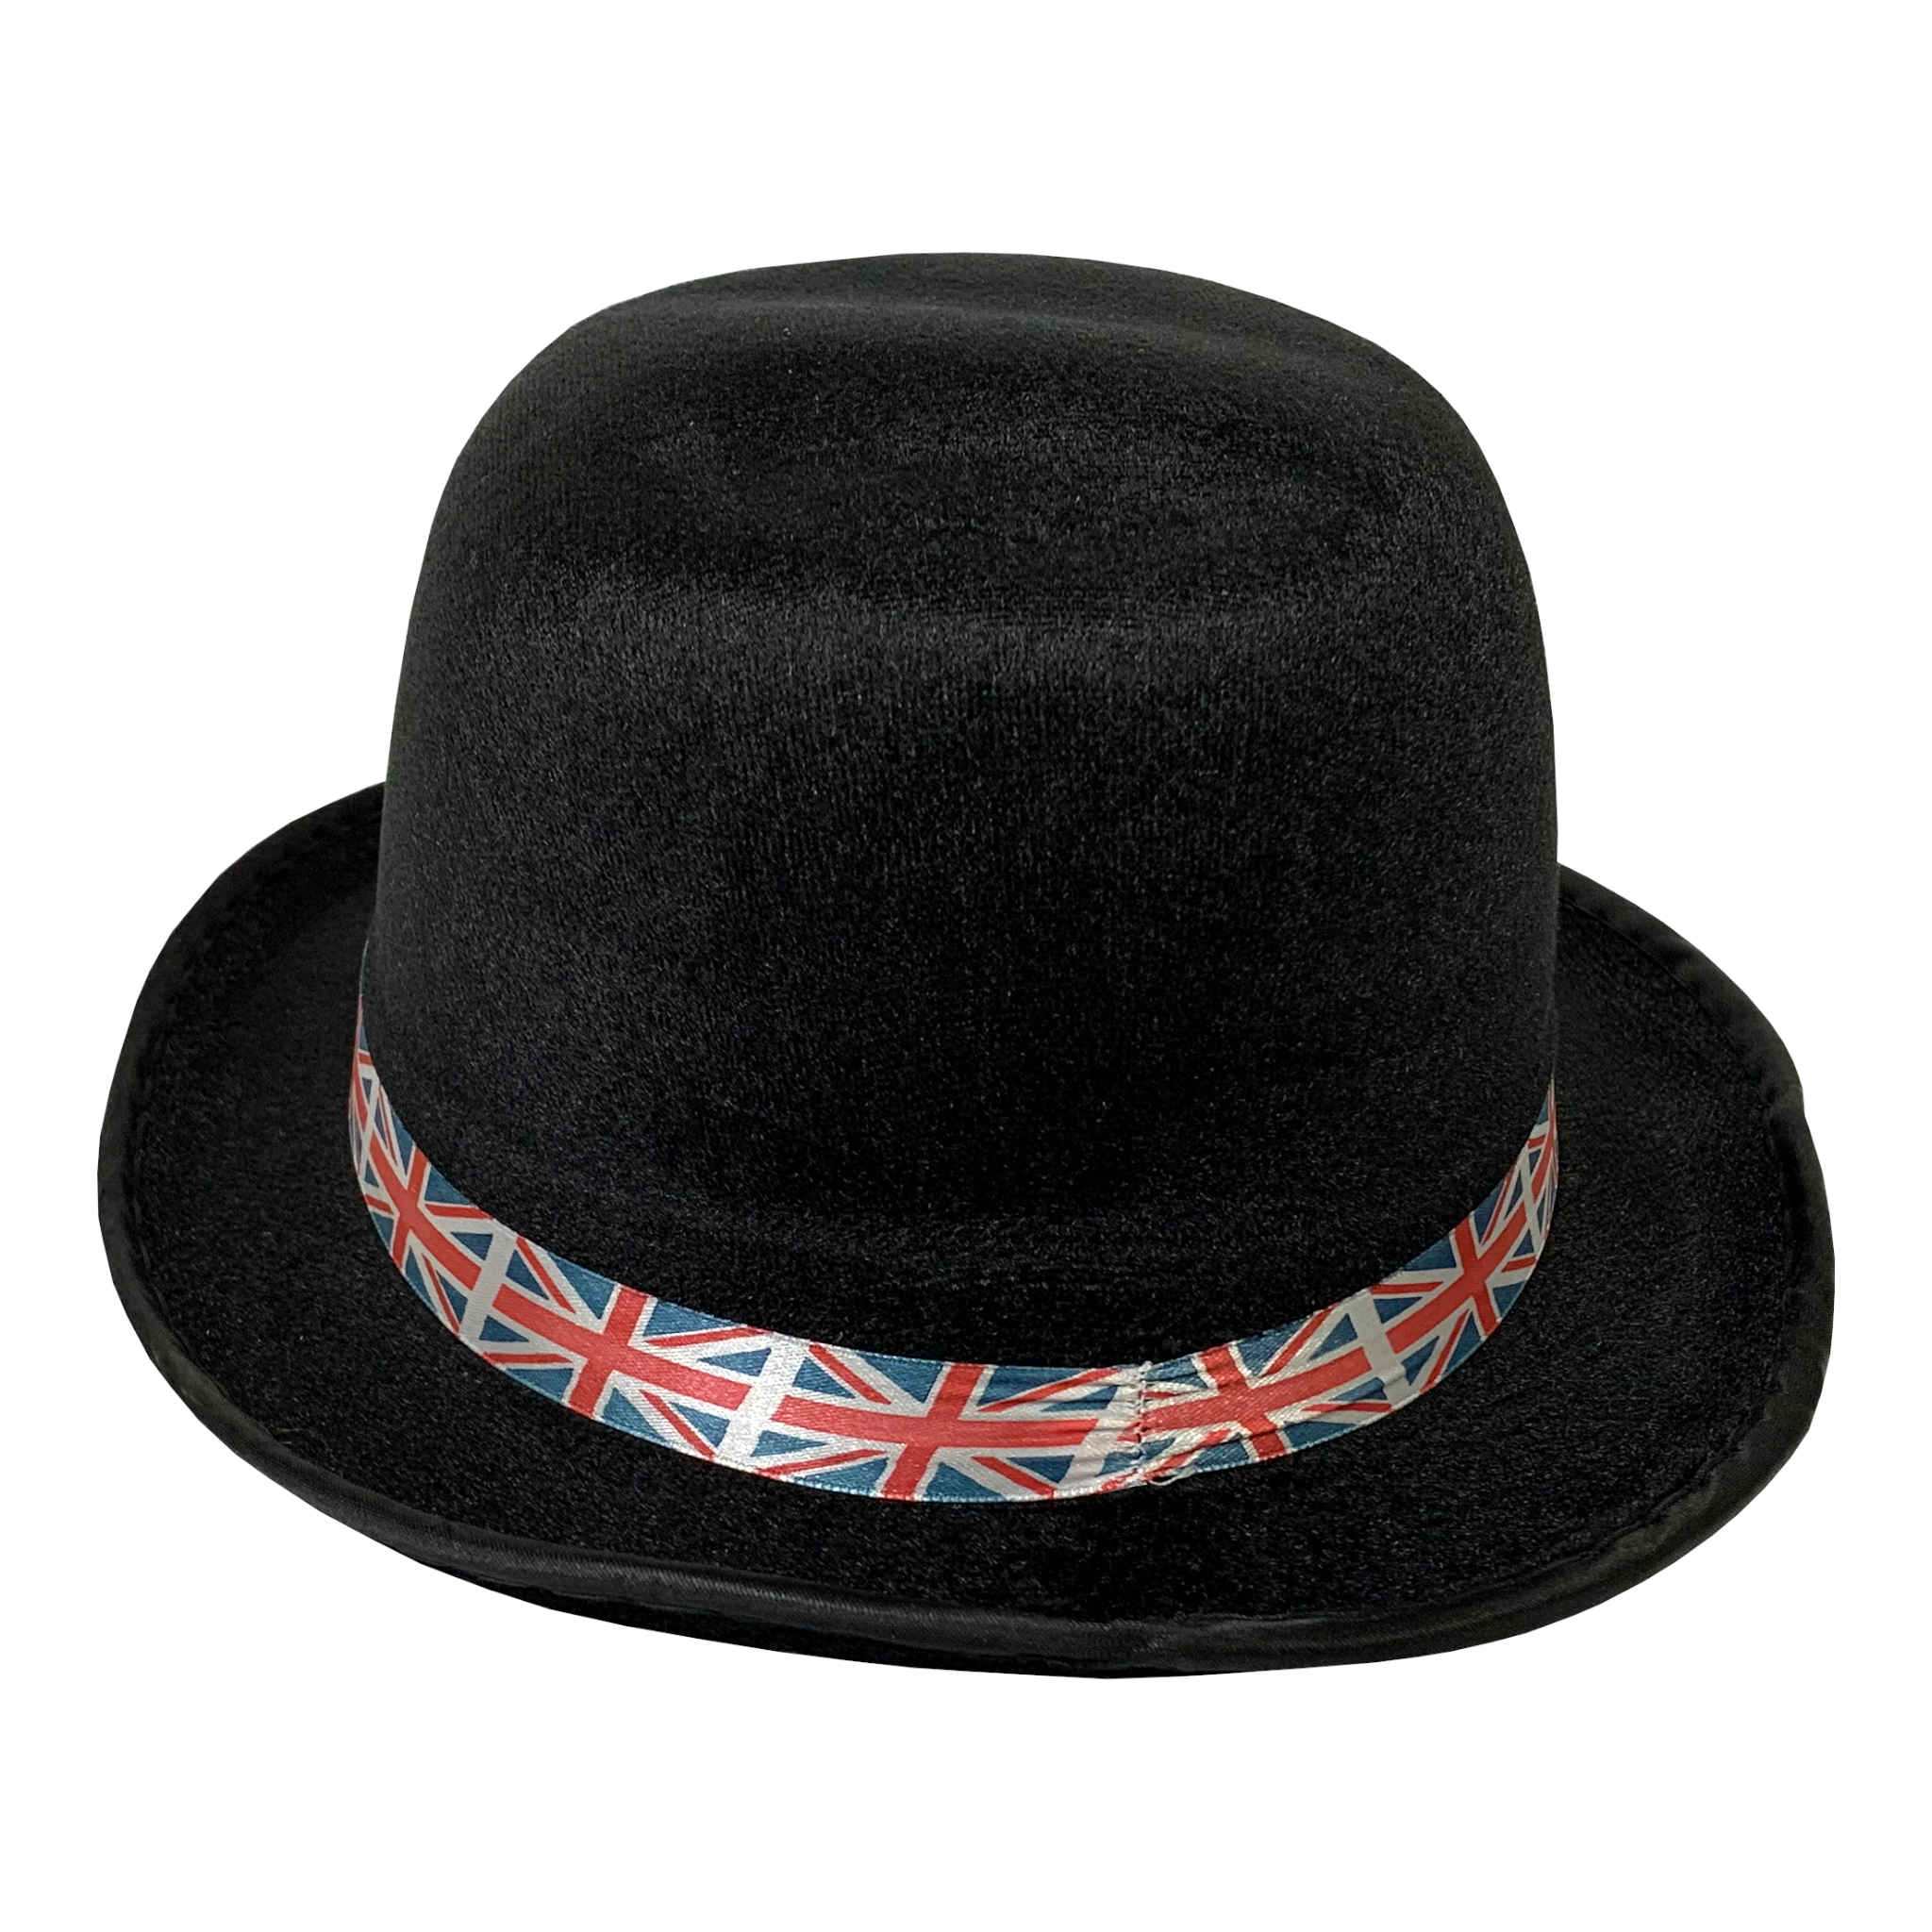 Union Jack Bowler Hat | Adult Size | Black